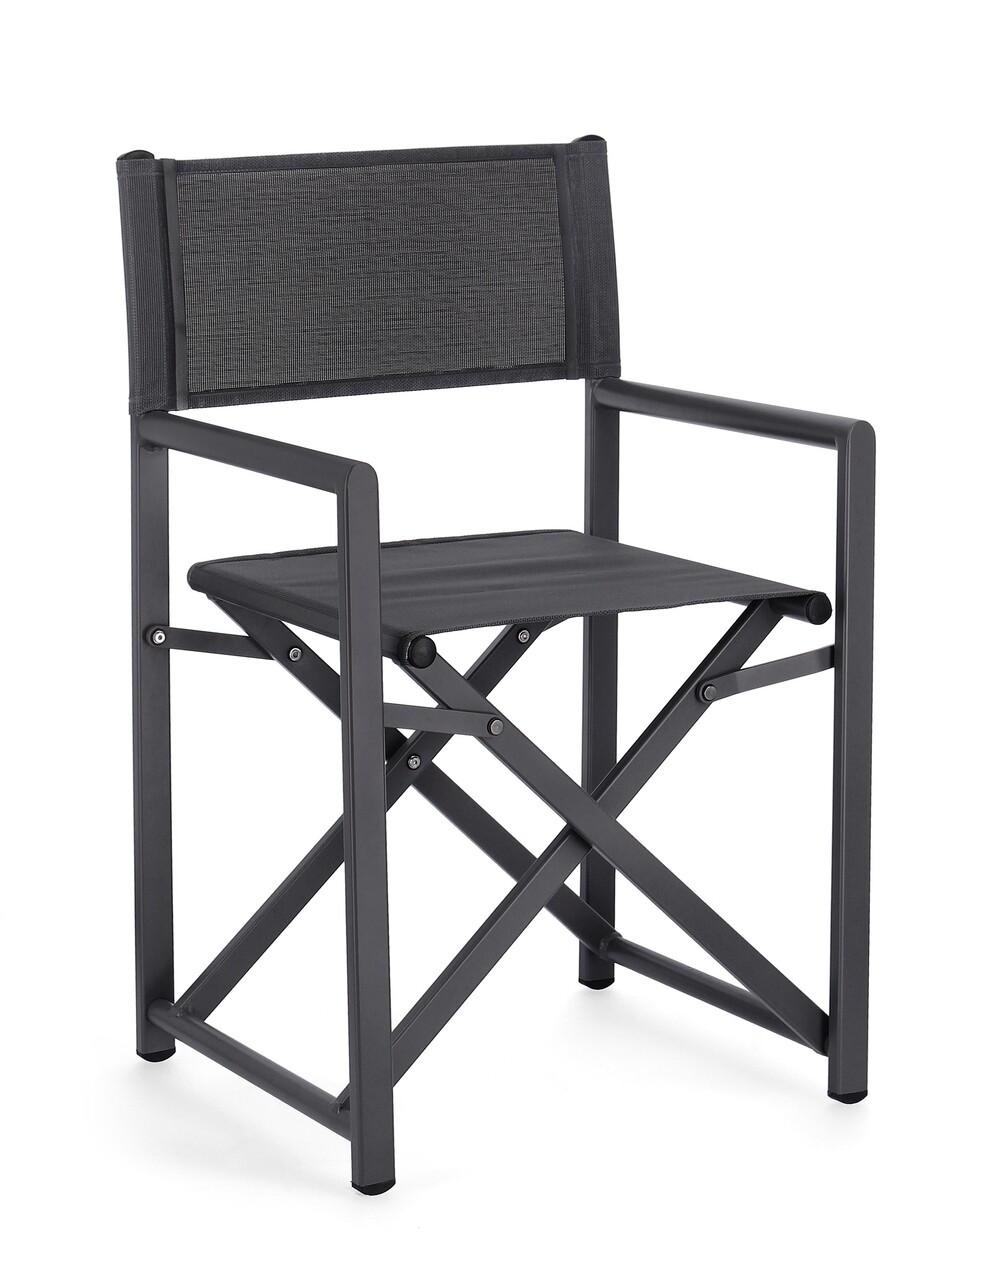 Taylor összecsukható kerti szék, bizzotto, 48 x 56 x 86 cm, alumínium/textilén 2x1, szénszürke